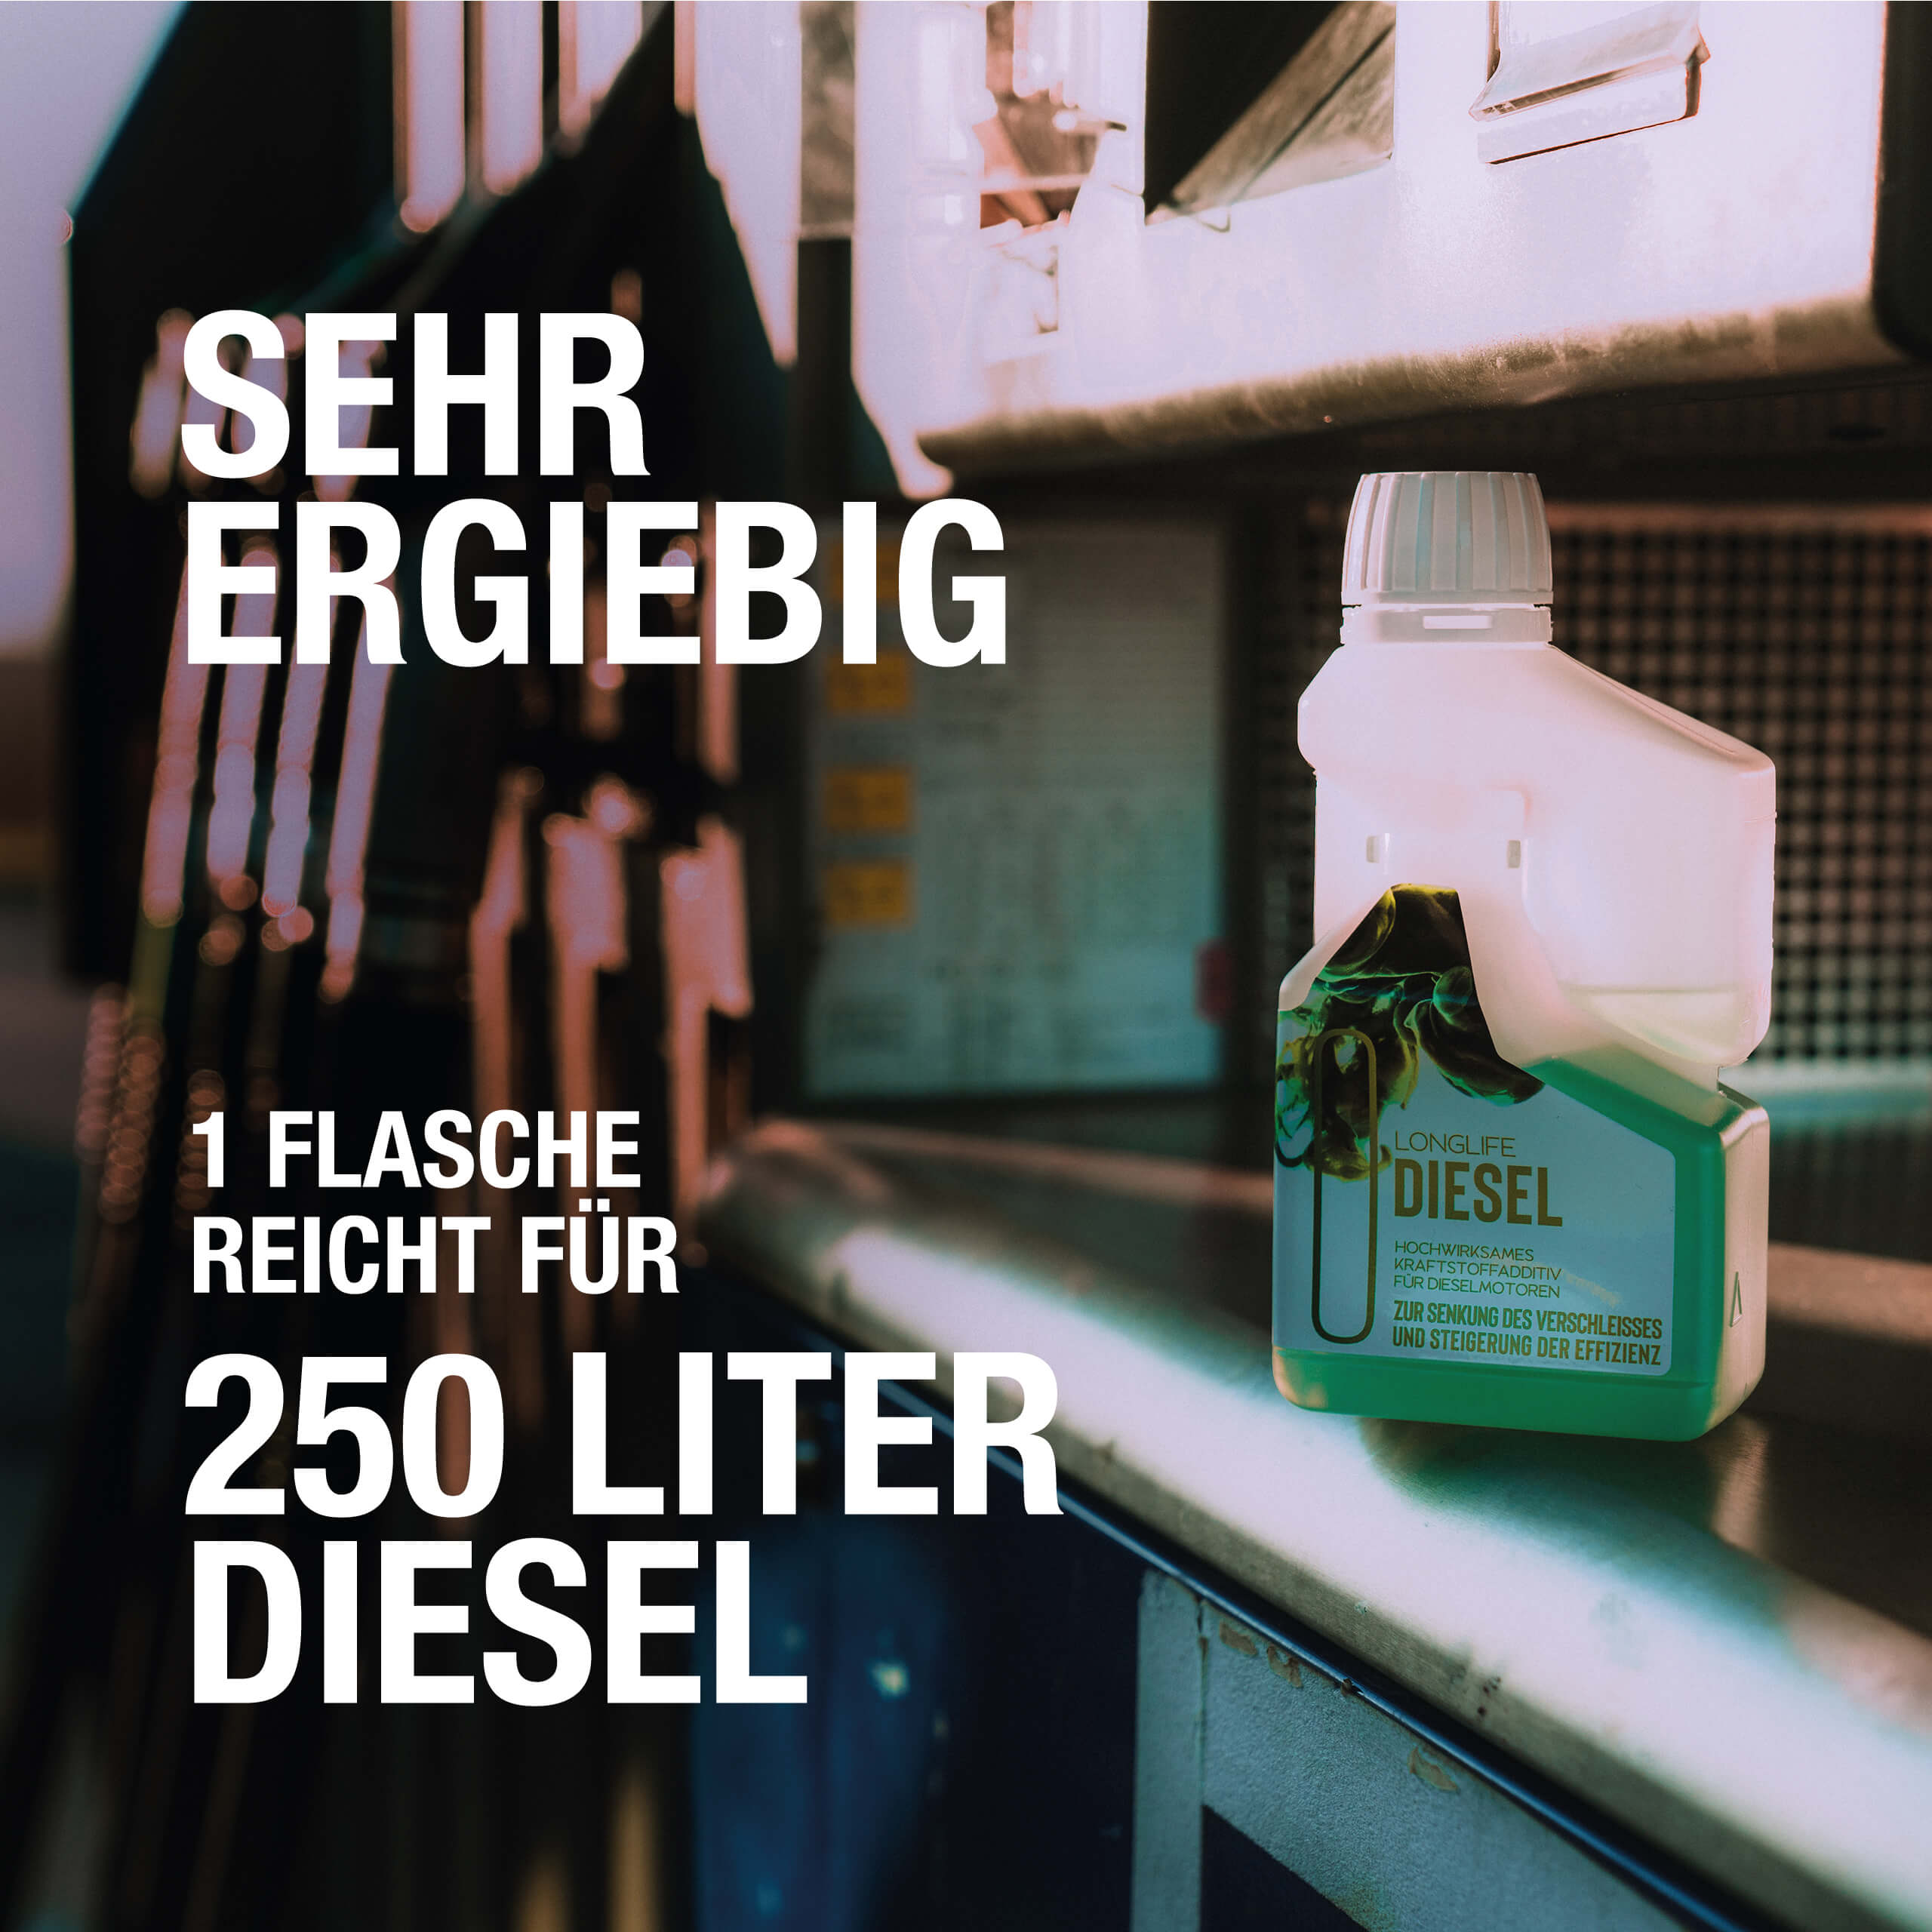 Lifetime Diesel-Injektor Reinigungs-Kit - Lifetime Technologies Shop